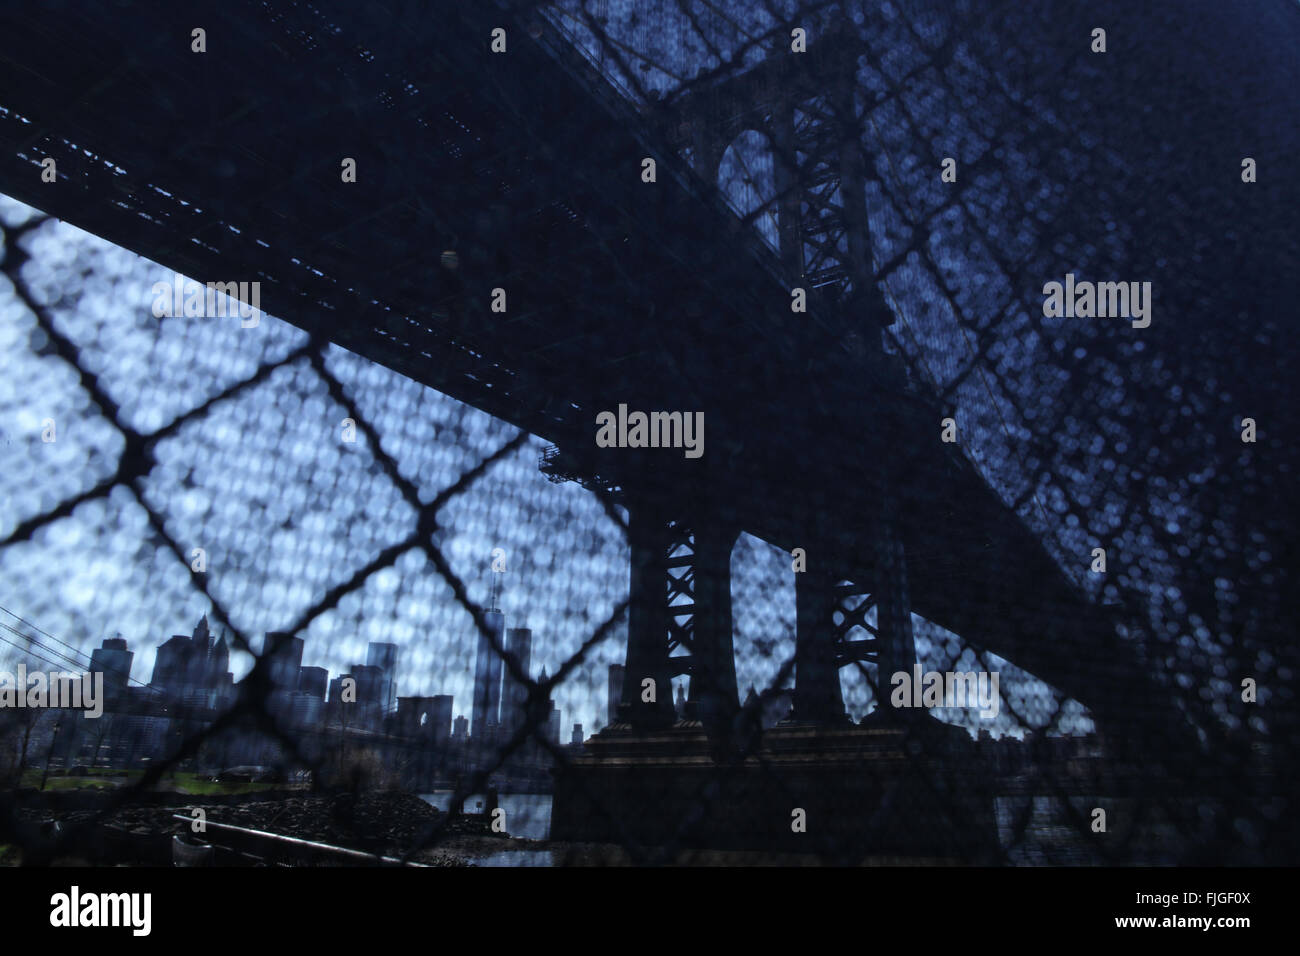 Distorsionada visión industrial de Manhattan Bridge waterfront fotografiado de la ciudad de Nueva York a través de una valla de alambre Foto de stock